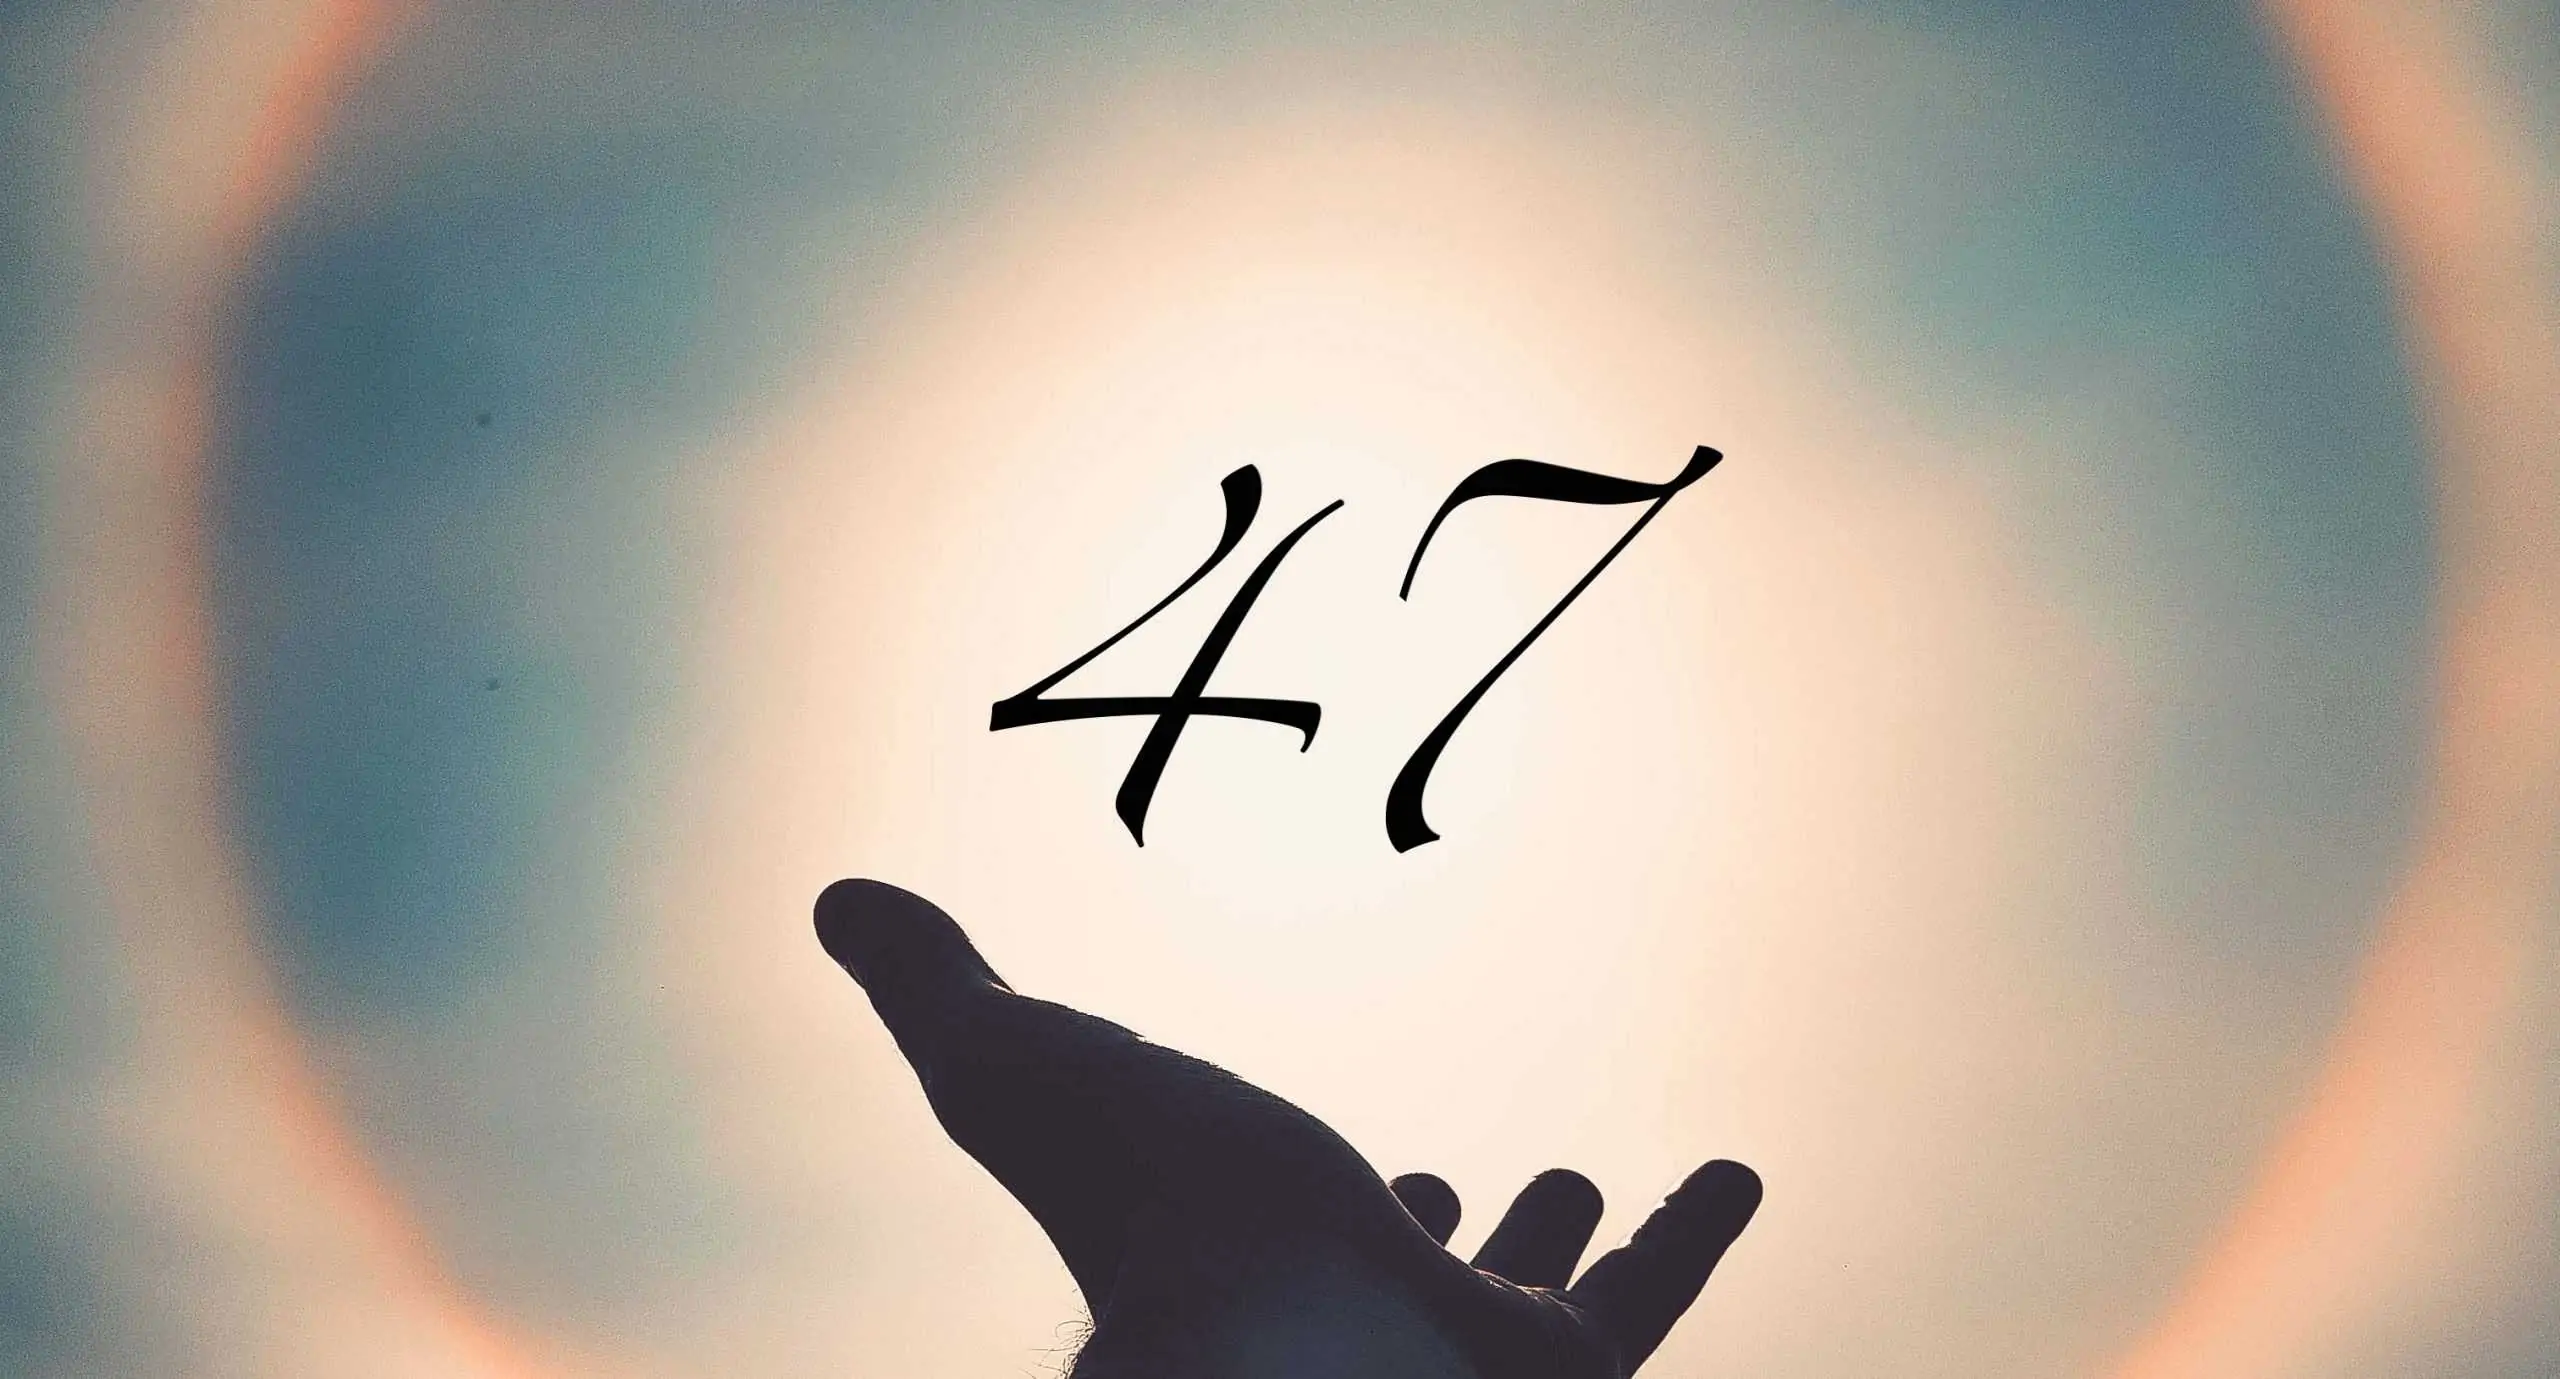 Signification du nombre 47